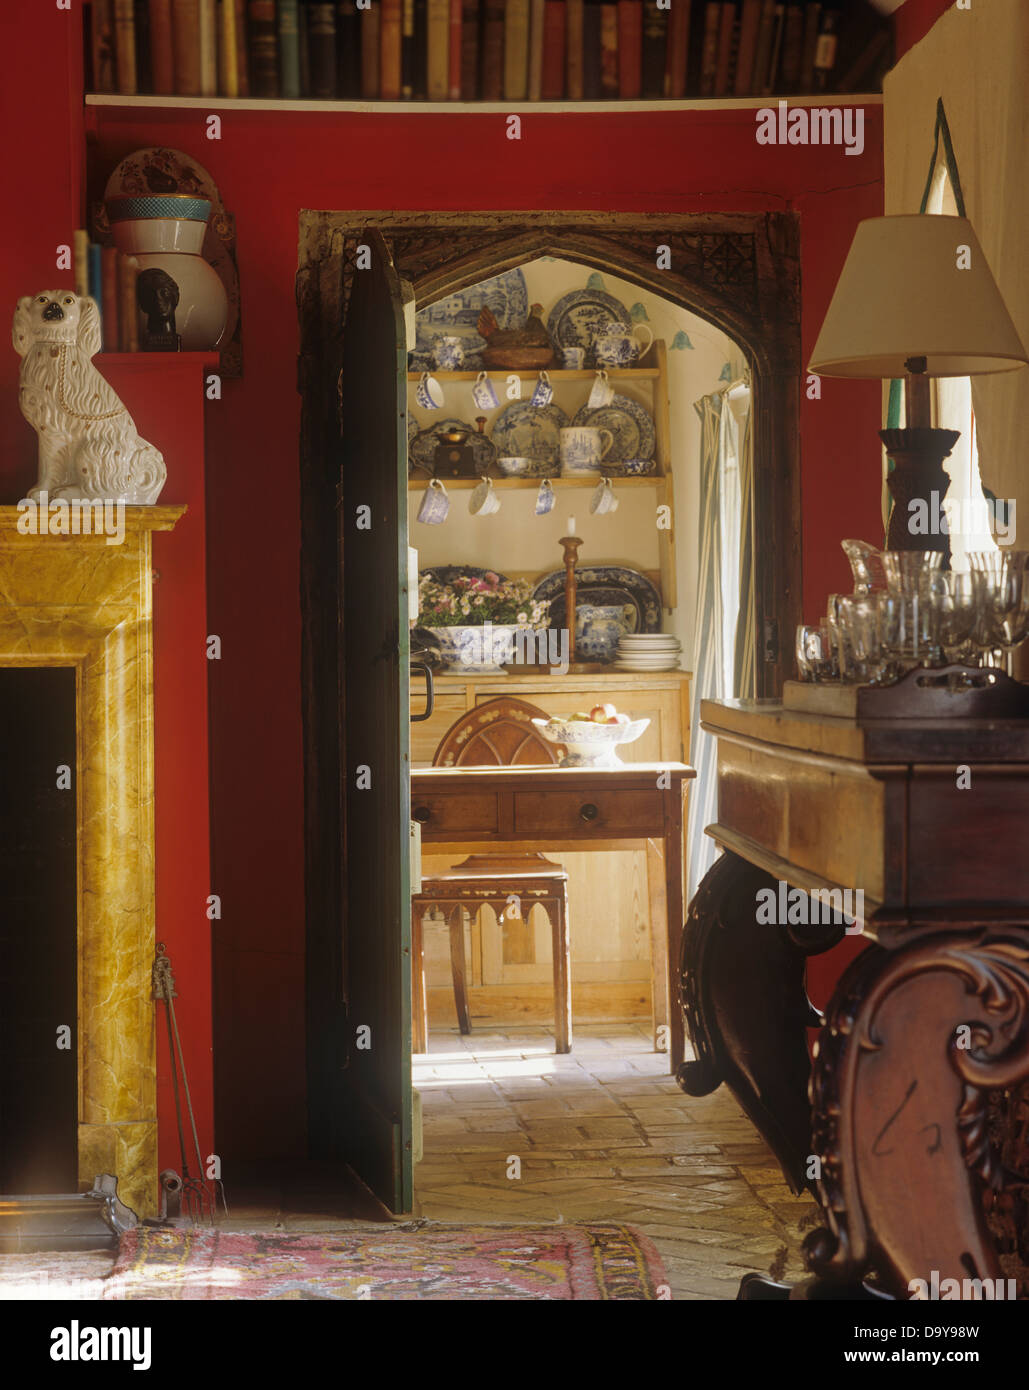 Salle à manger rouge avec porte voûtée de style gothique avec vue jusqu'à la table en pin et chaise dans chalet cuisine Banque D'Images